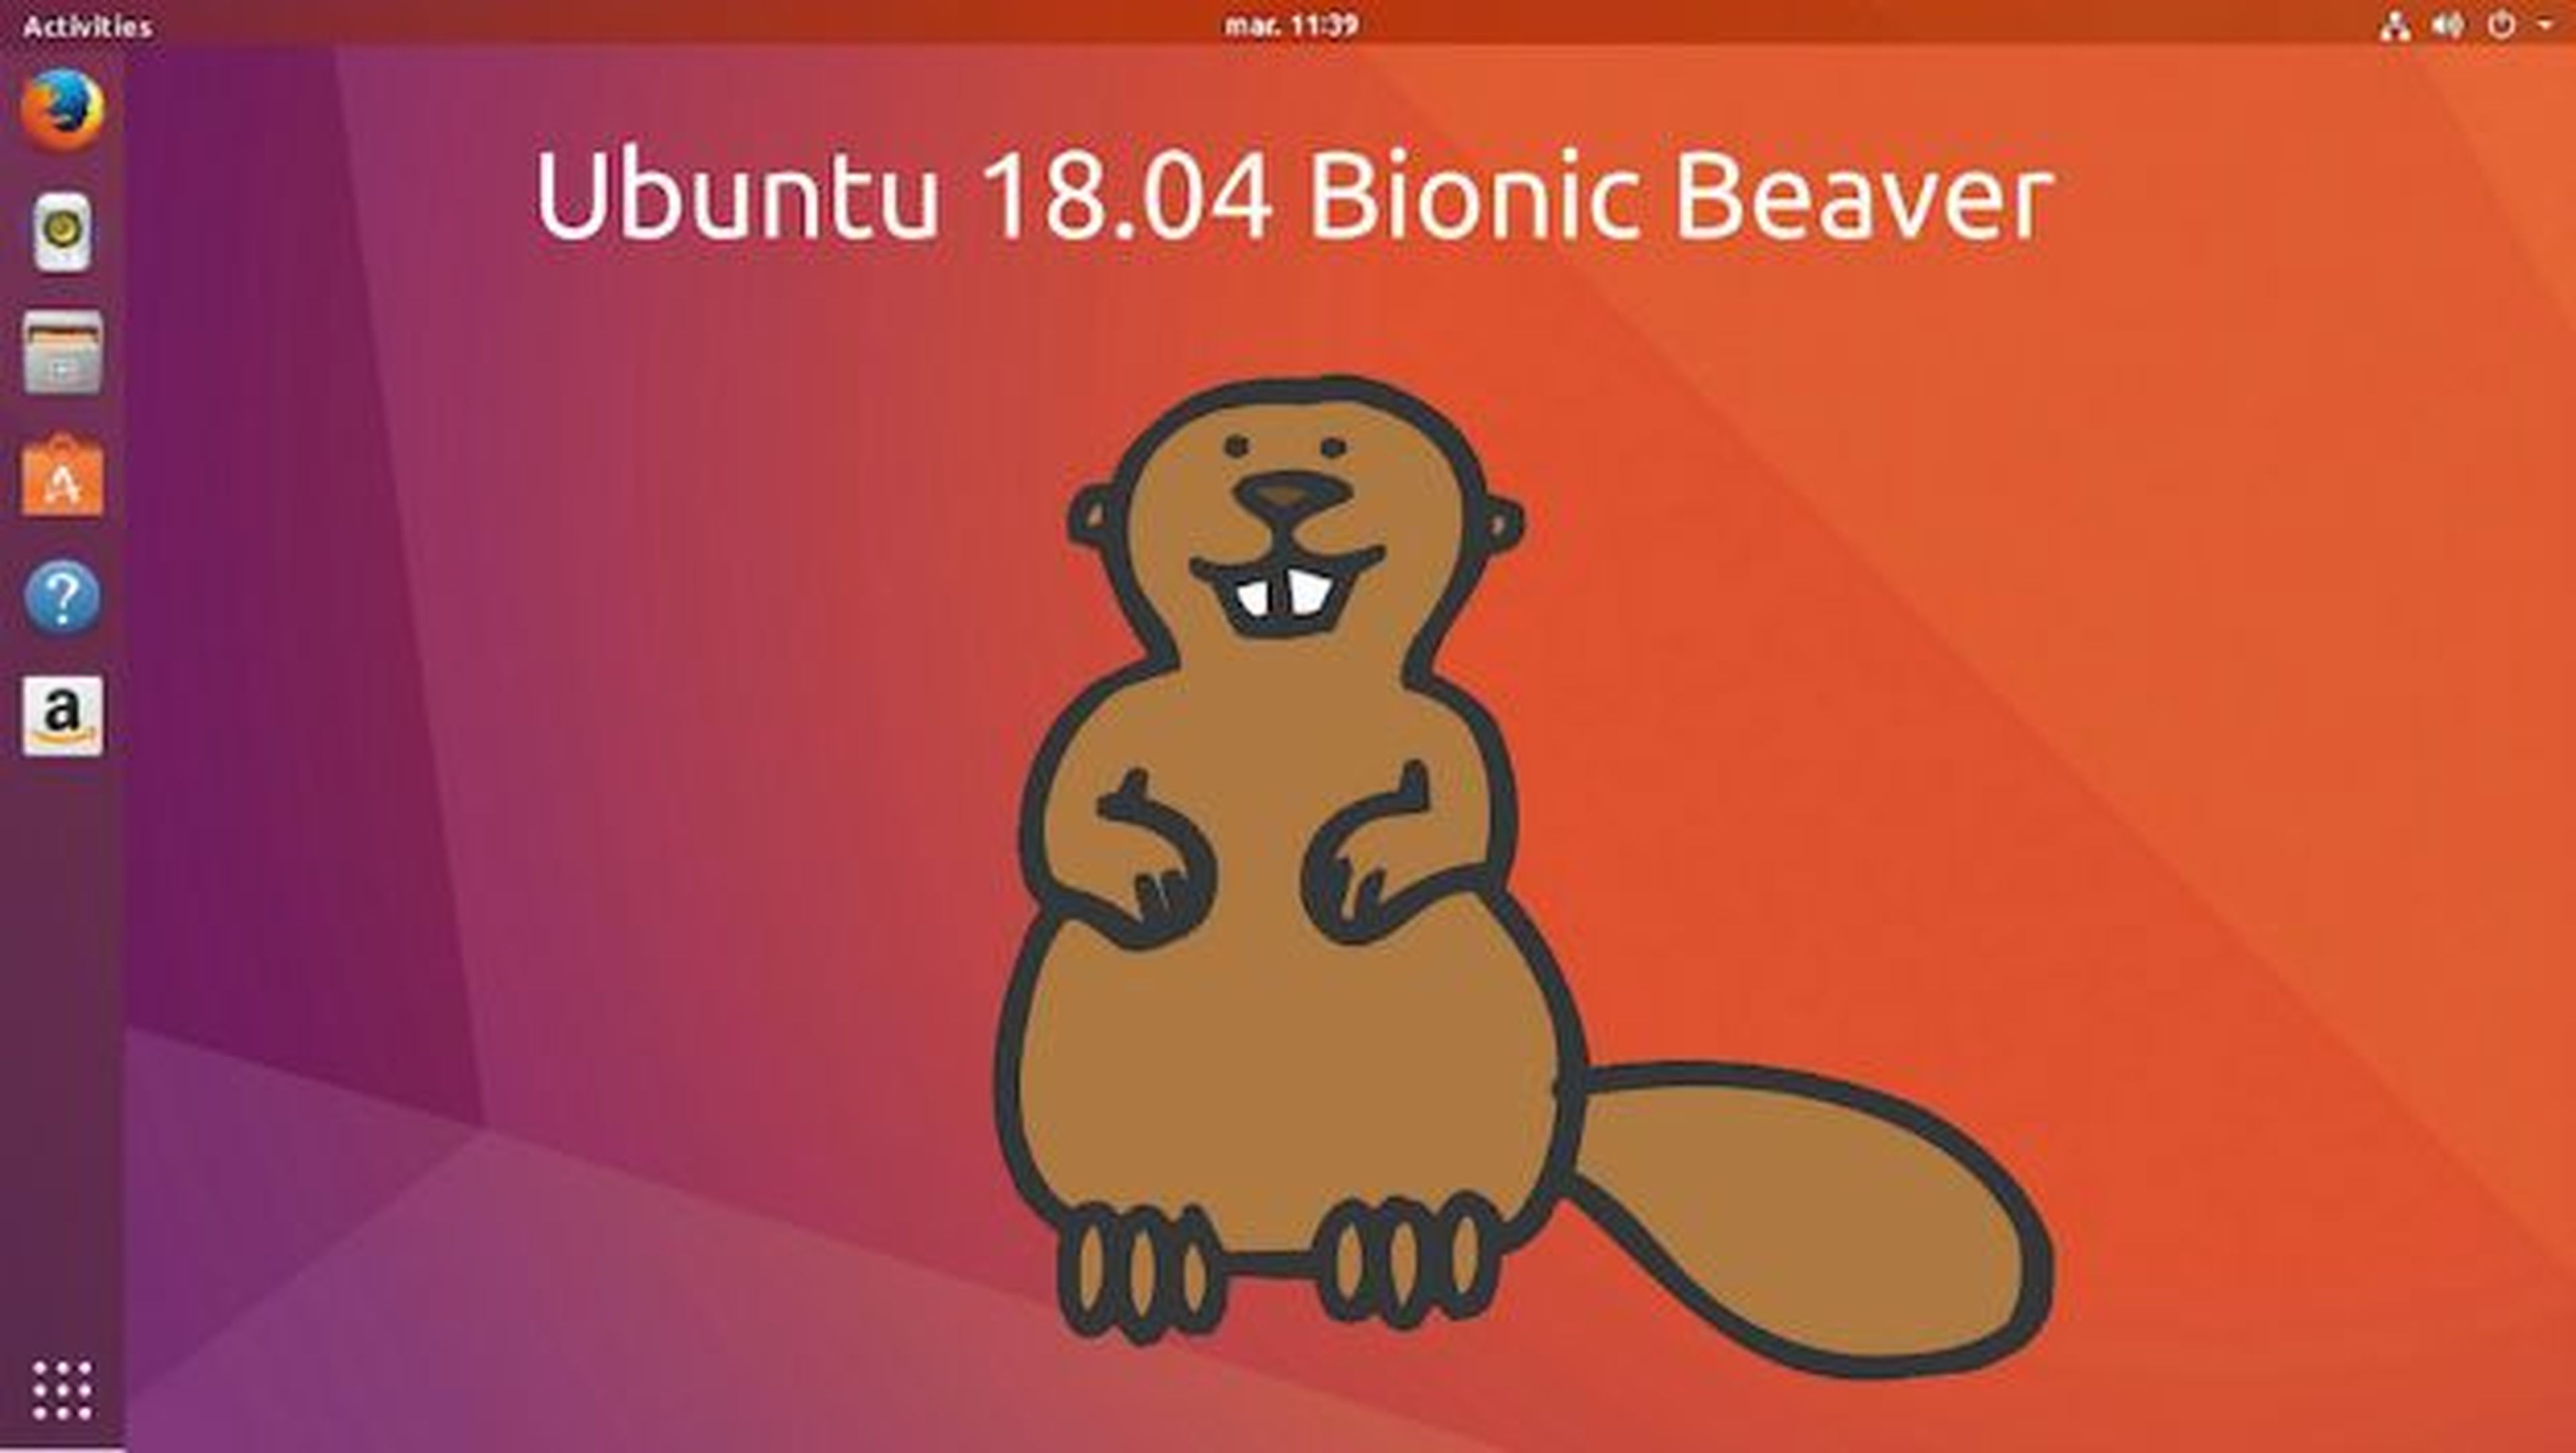 La privacidad de Ubuntu 18.04 permite al sistema recopilar información sobre el usuario.